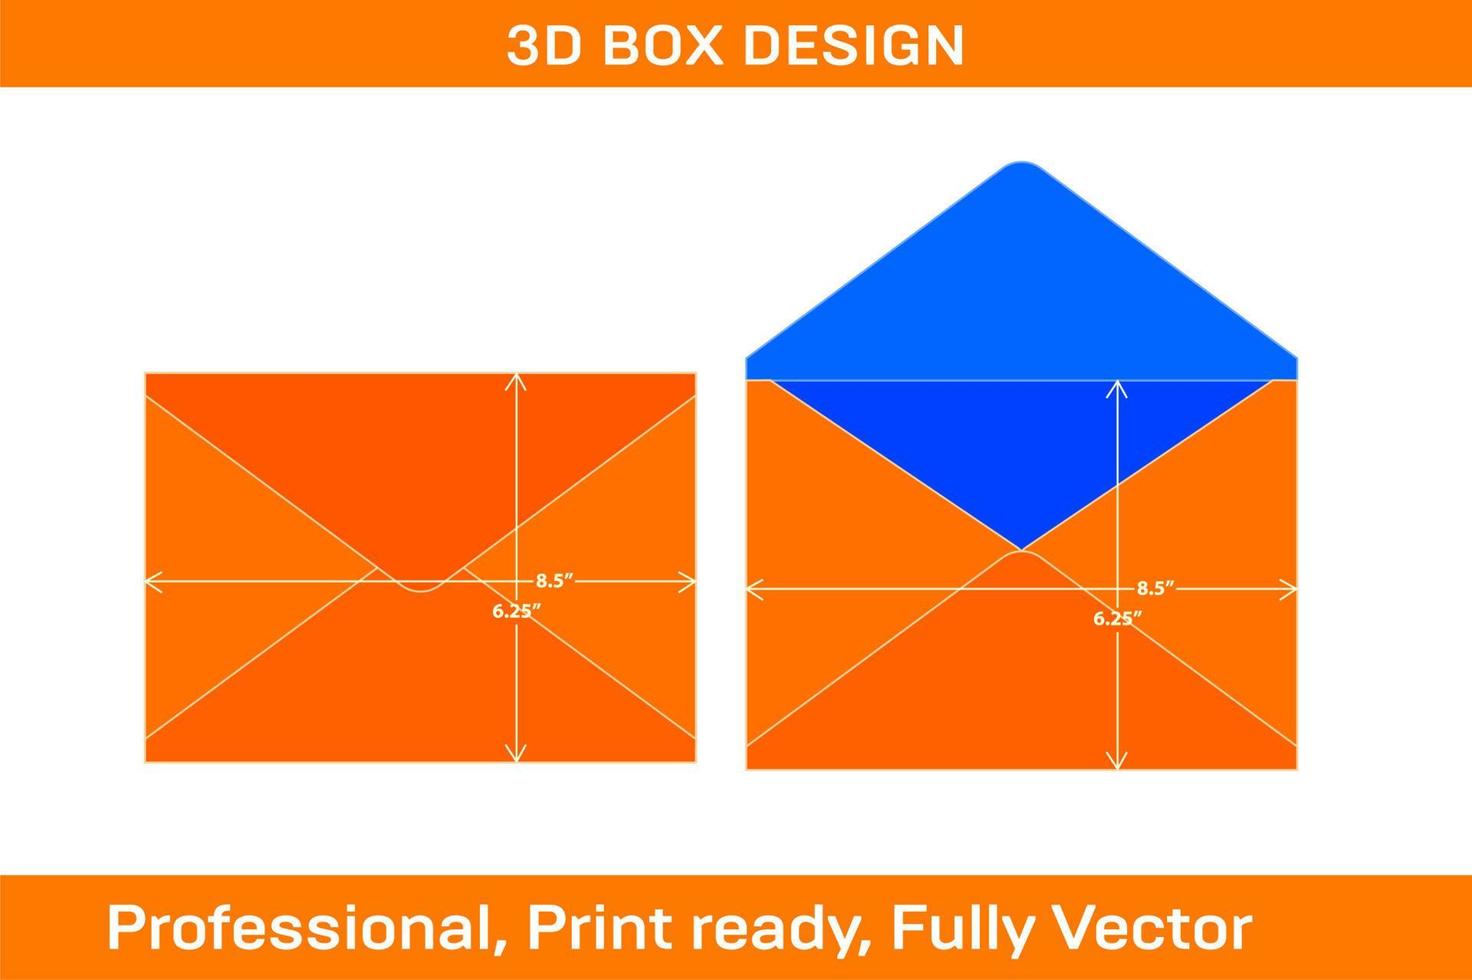 Modelo dieline de envelope com aba pontiaguda de 6,25 x 8,5 polegadas e envelope 3D redimensionável vetor